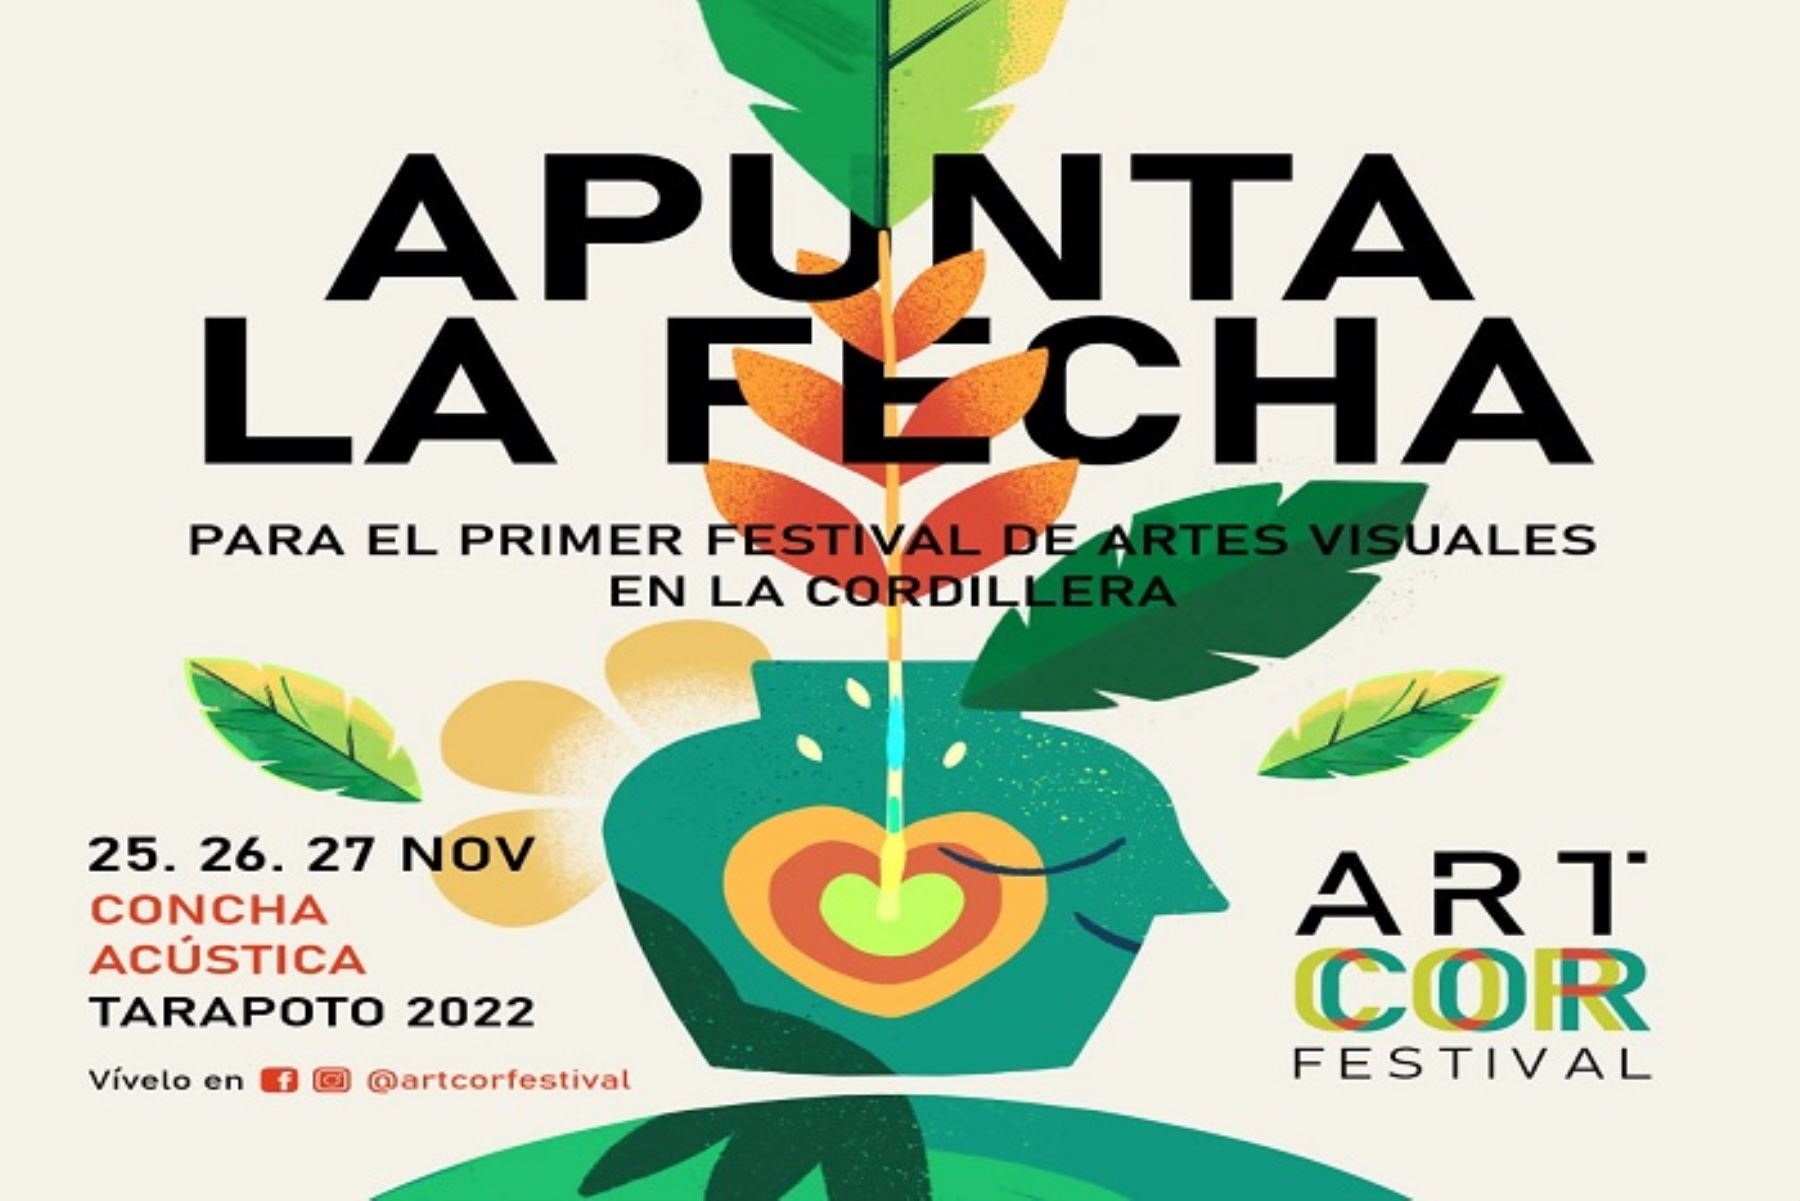 San Martín: Tarapoto se prepara para realizar el Festival Arte en la Cordillera- Artcor